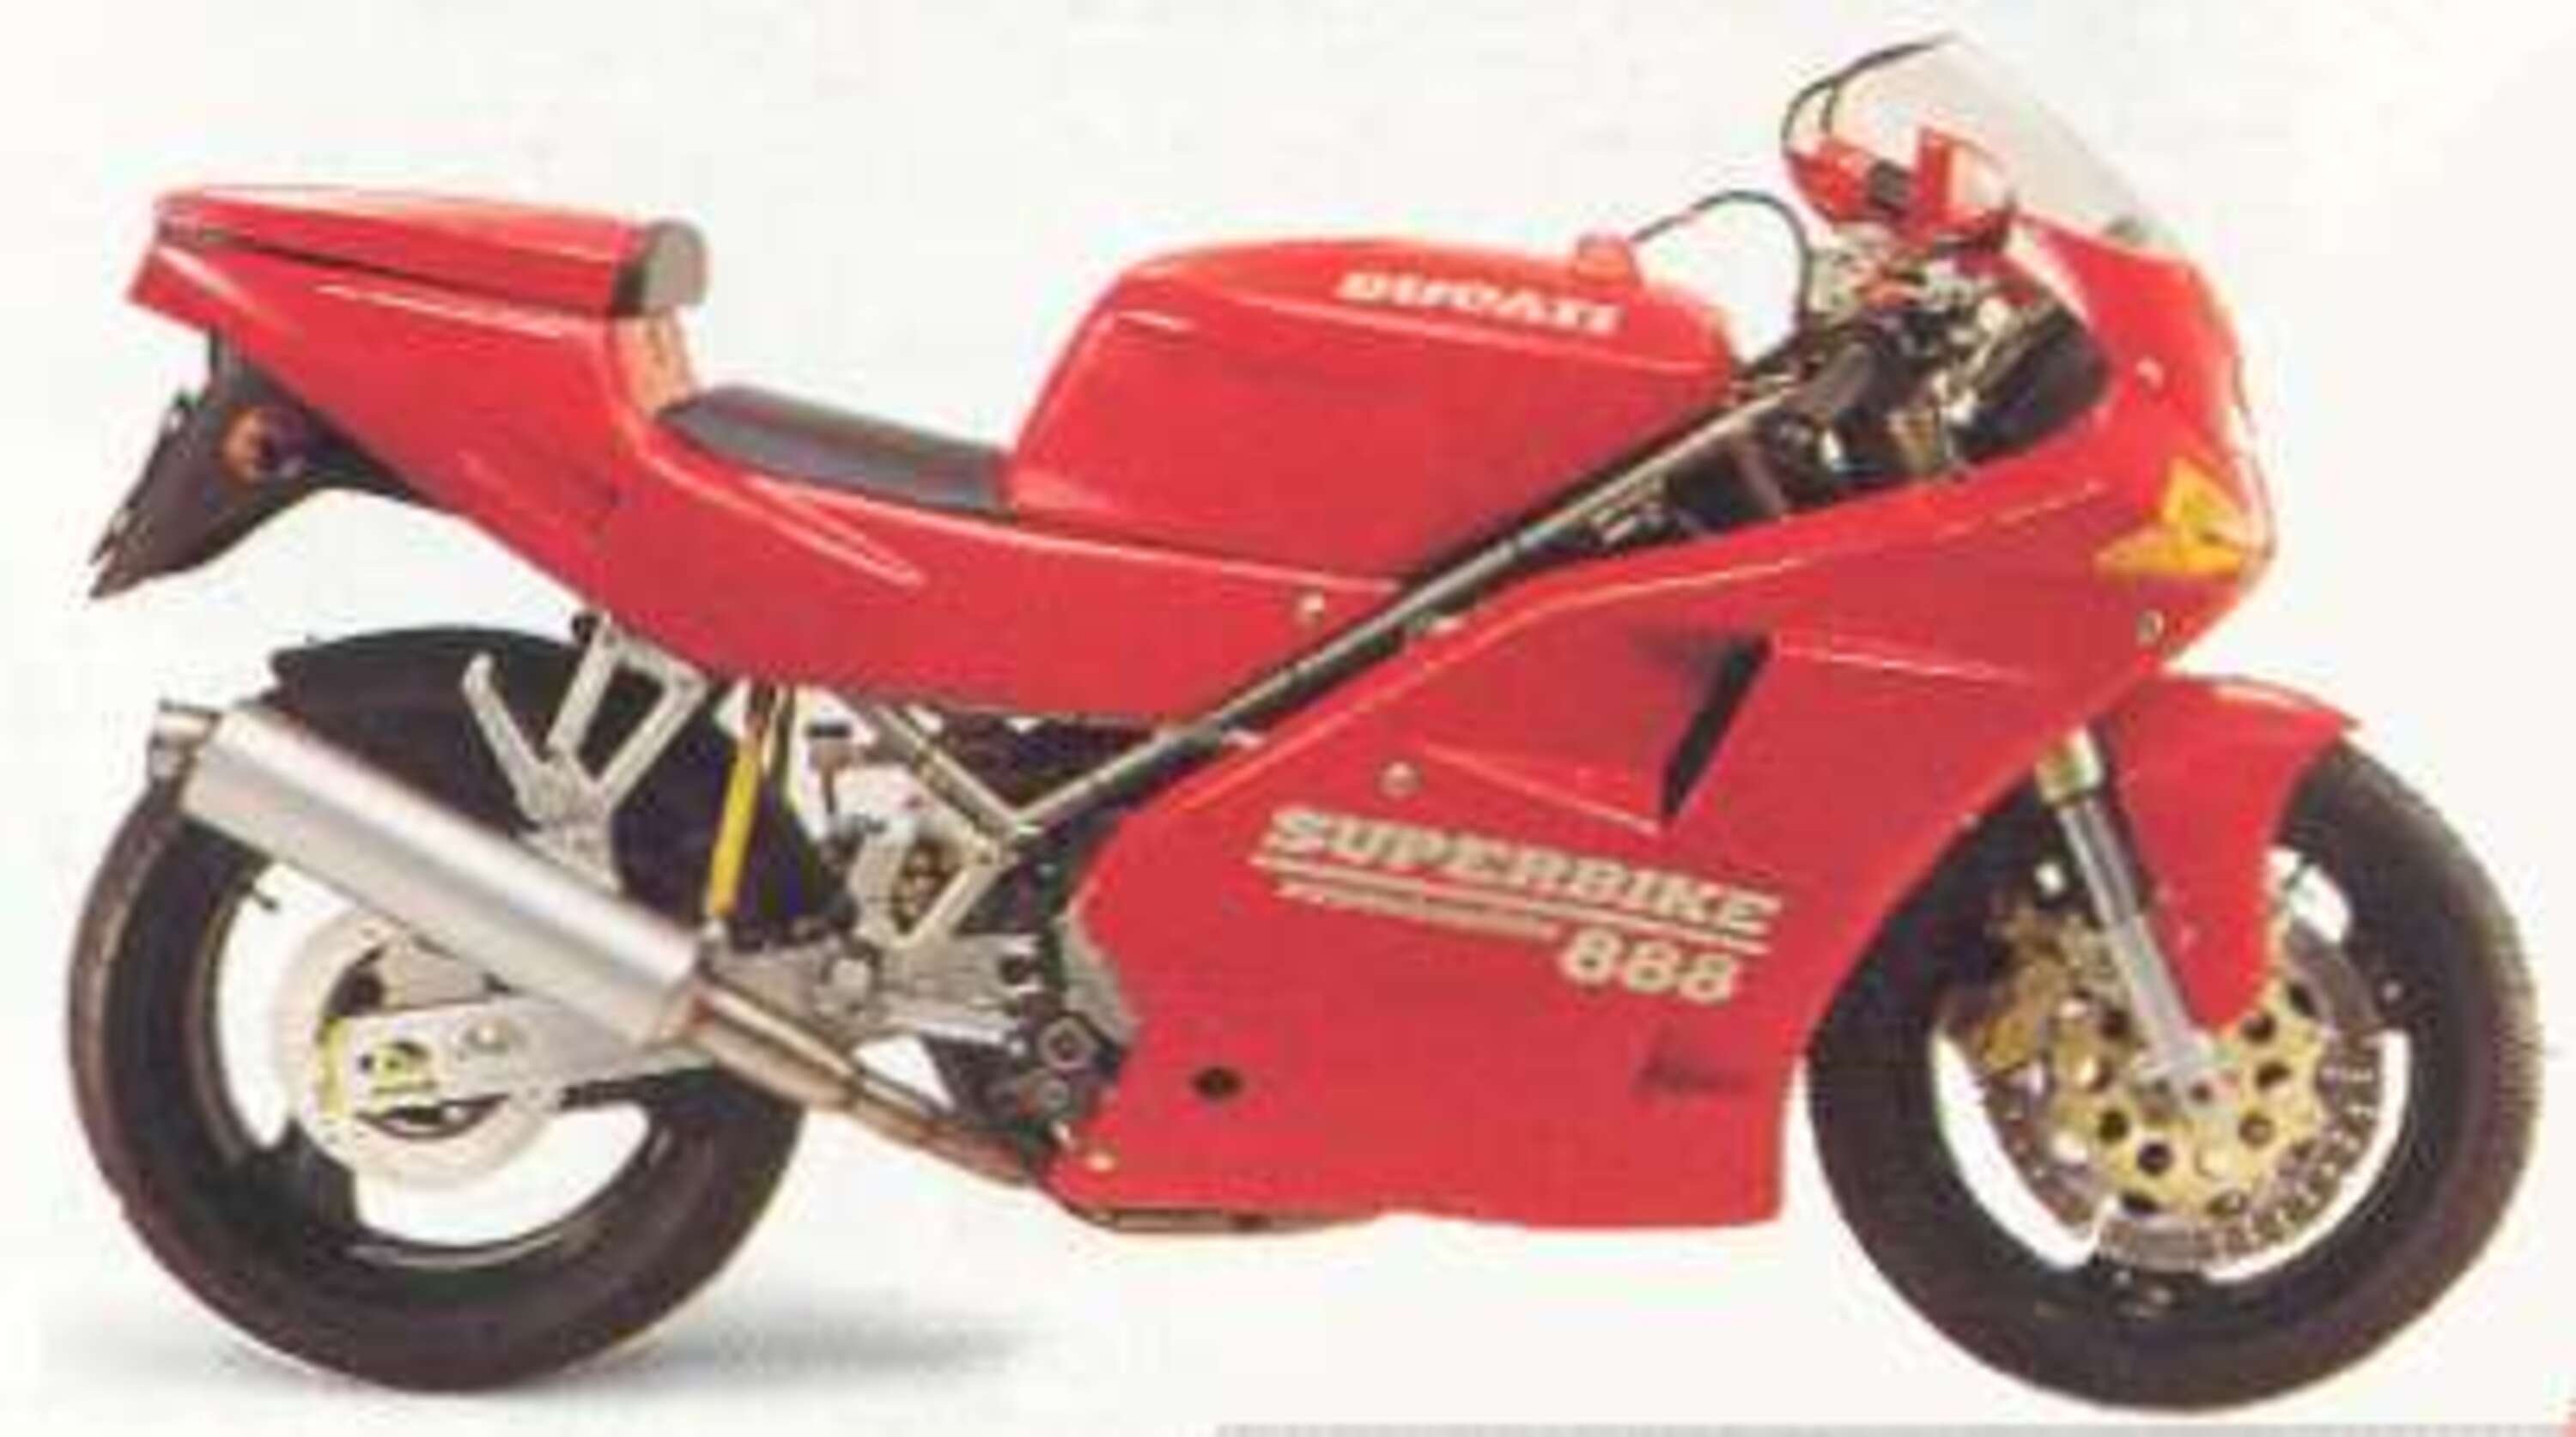 Ducati 888 888 Biposto (1992 - 94)